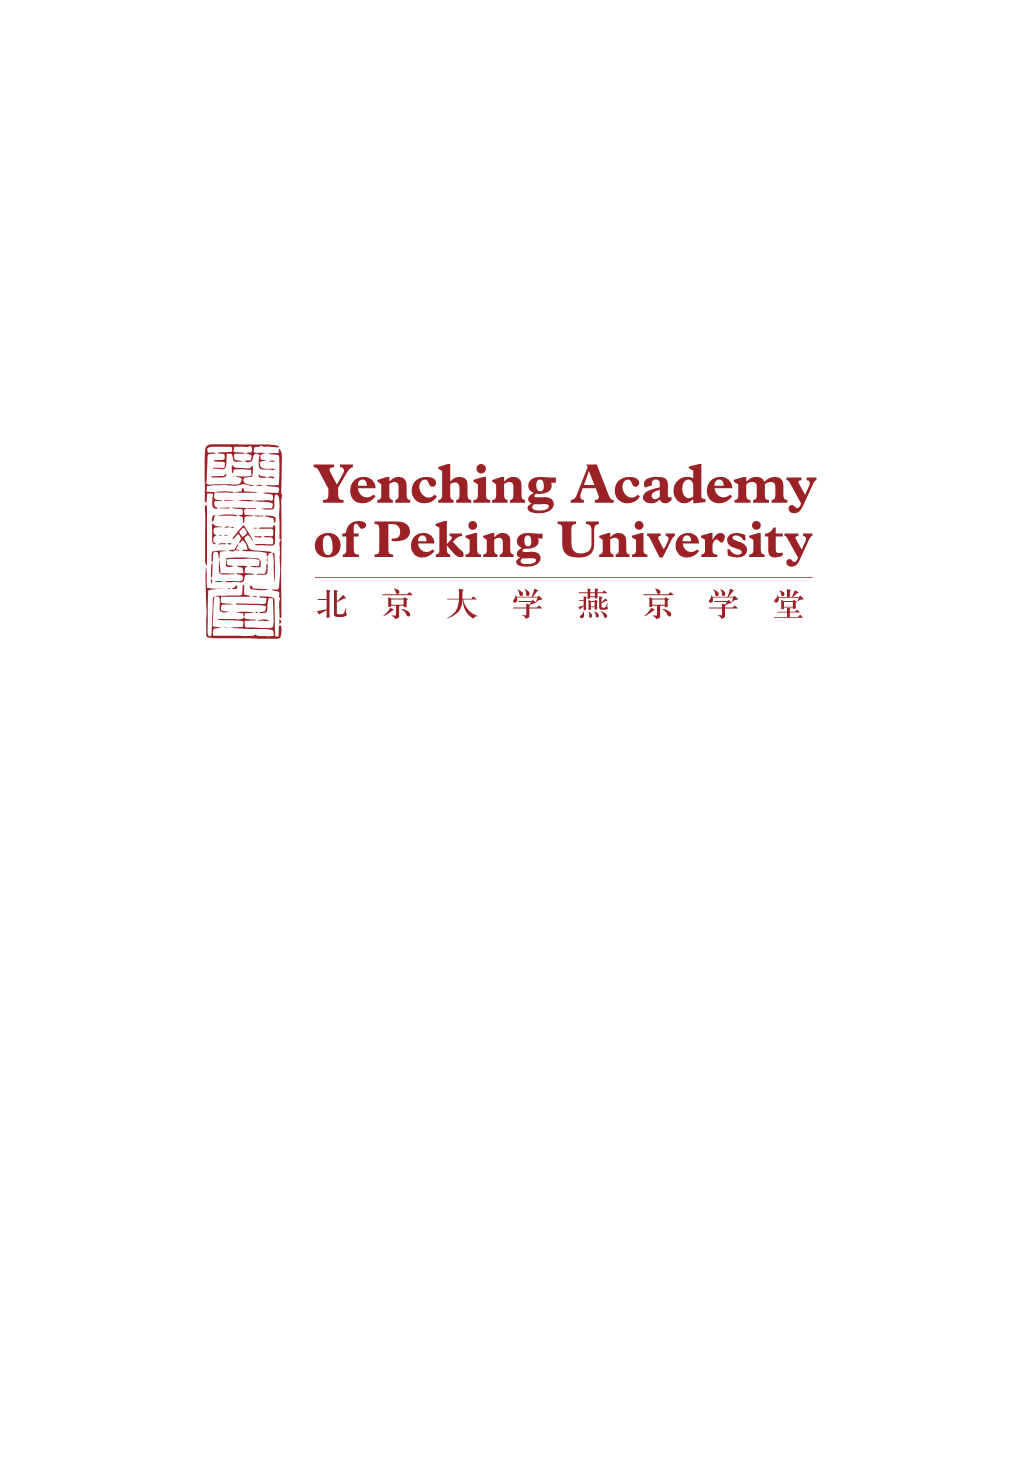 Yenching Academy Brochure